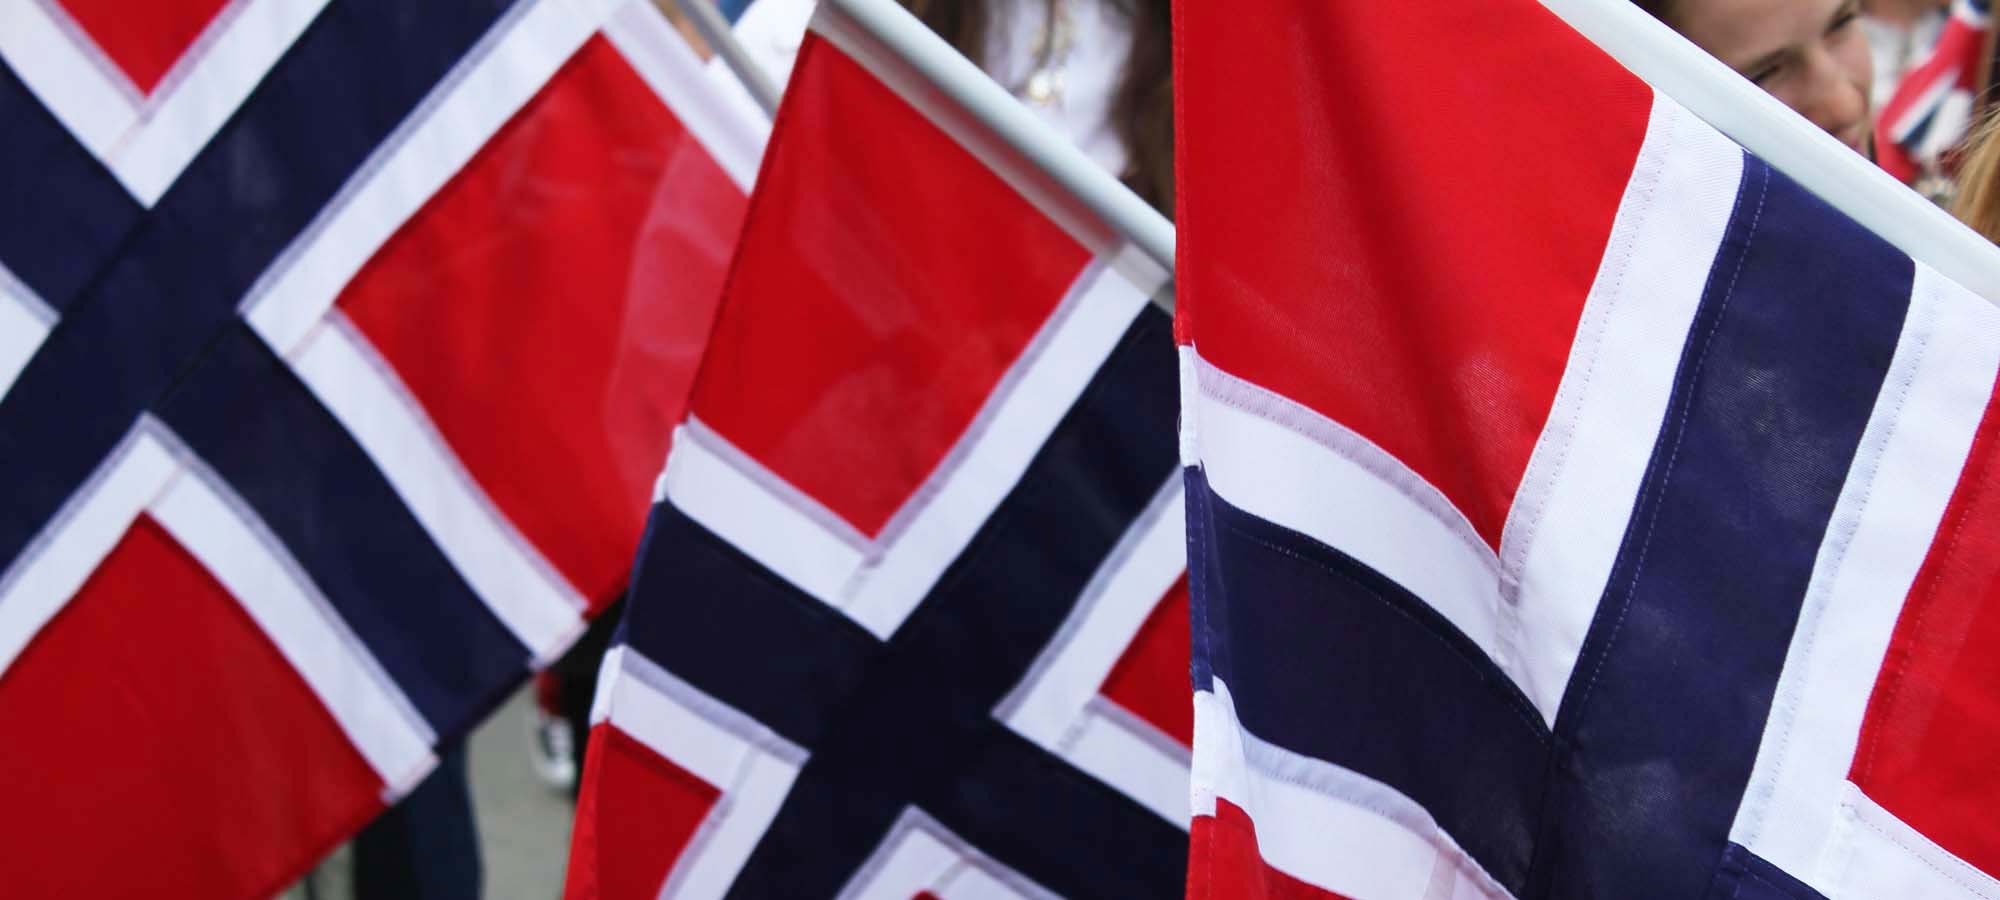 Norsk flagg i rødt hvitt og blått, vaier i vinden.